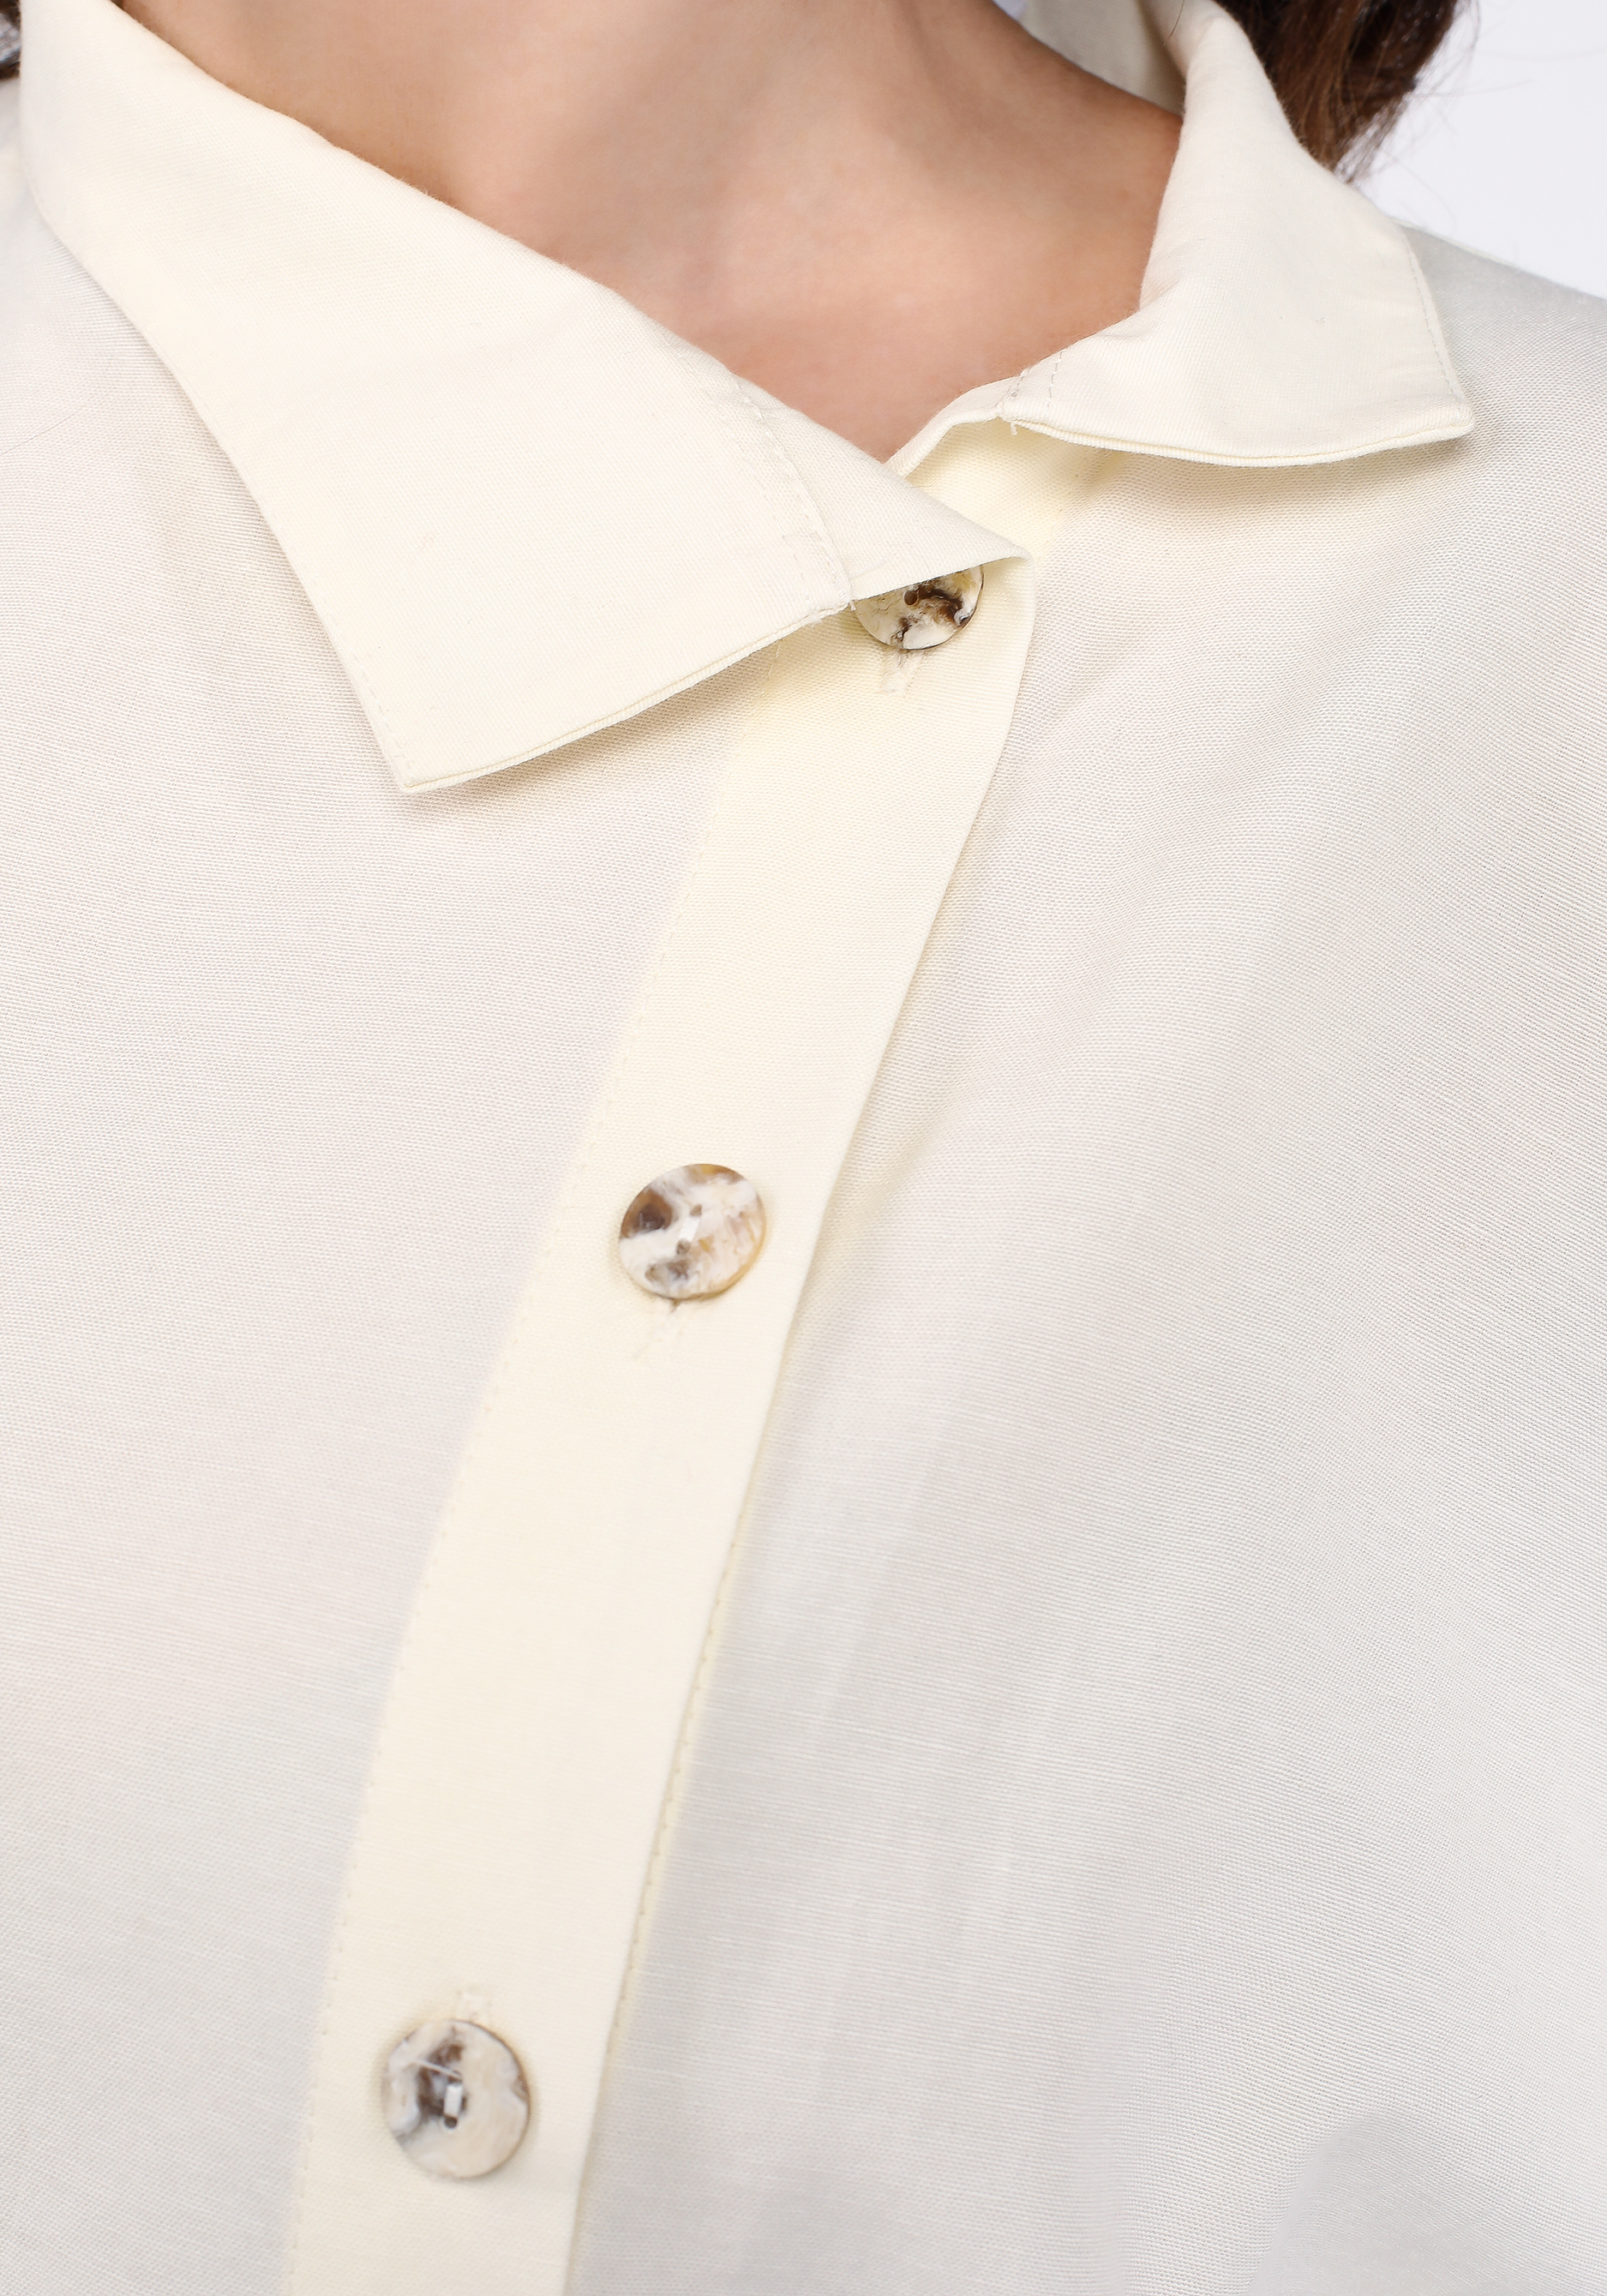 Рубашка свободного кроя с застежкой Manhattan, размер 48, цвет молочный - фото 4